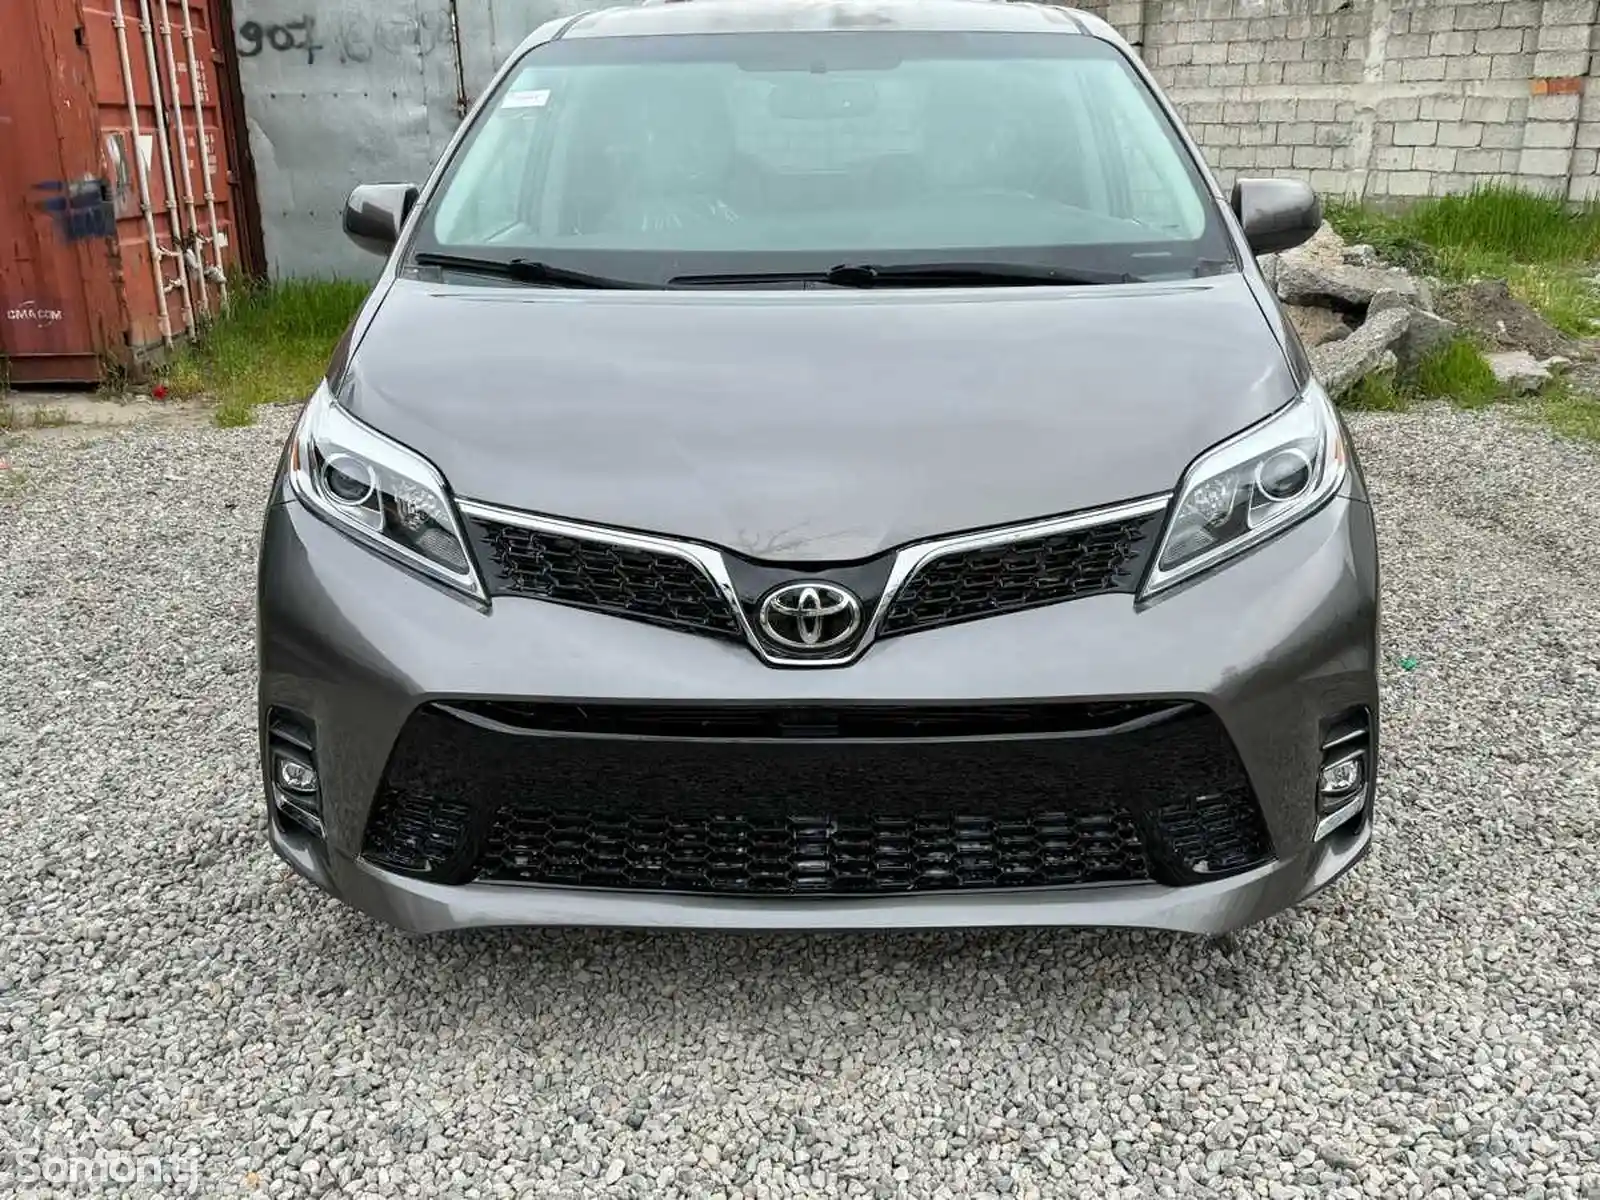 Toyota Sienna, 2015-2